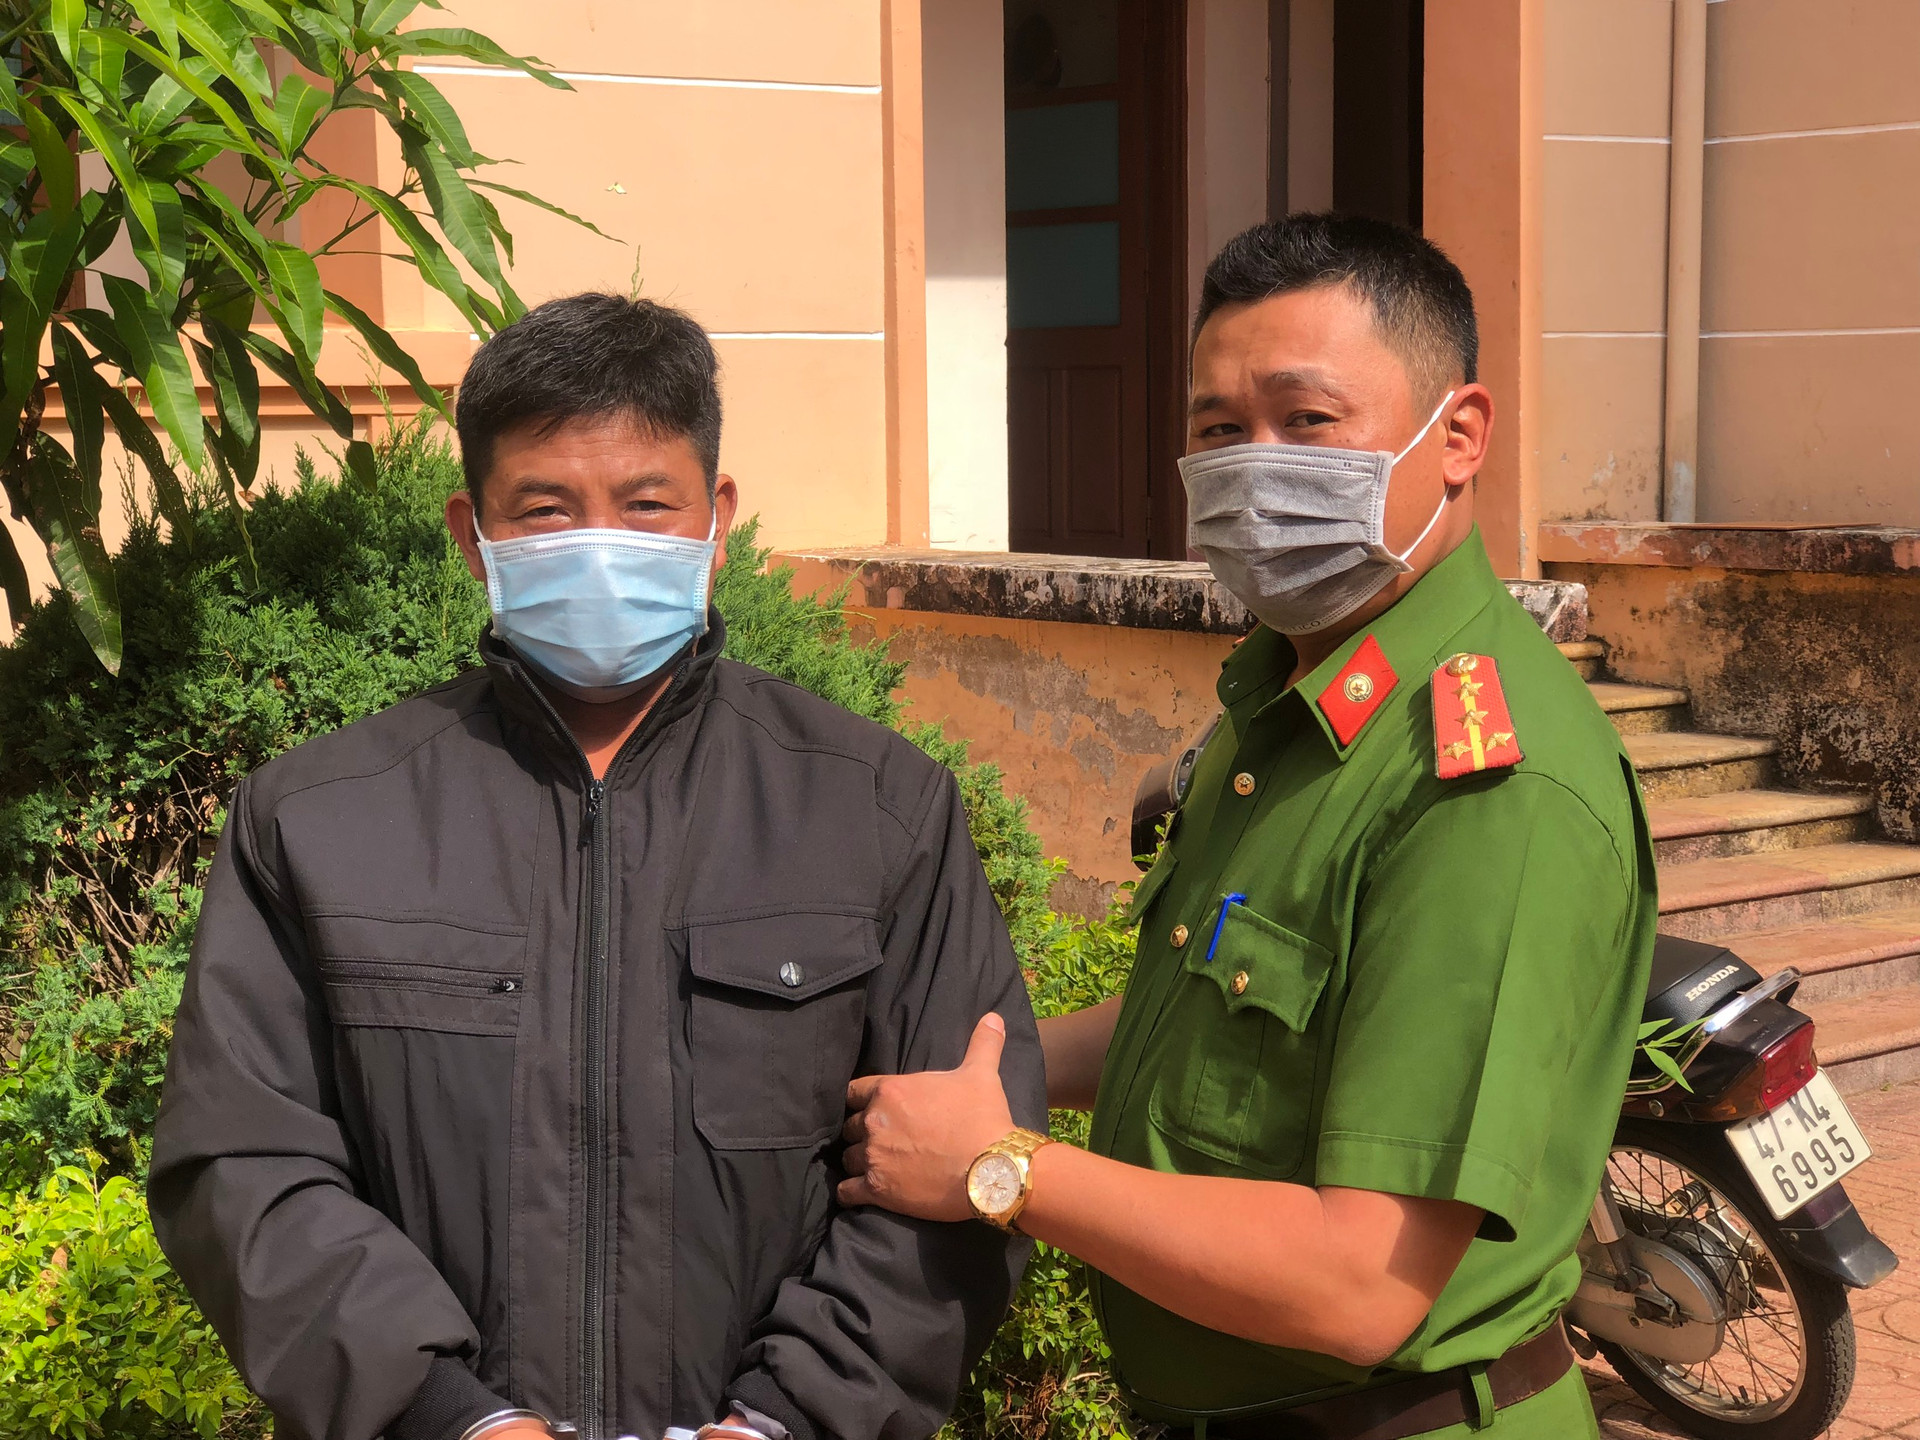 Đối tượng, Trần Văn Quân bị lực lượng Công an Đắk Nông bắt giữ khi đang lẩn trốn trên địa bàn thành phố Gia Nghĩa.  